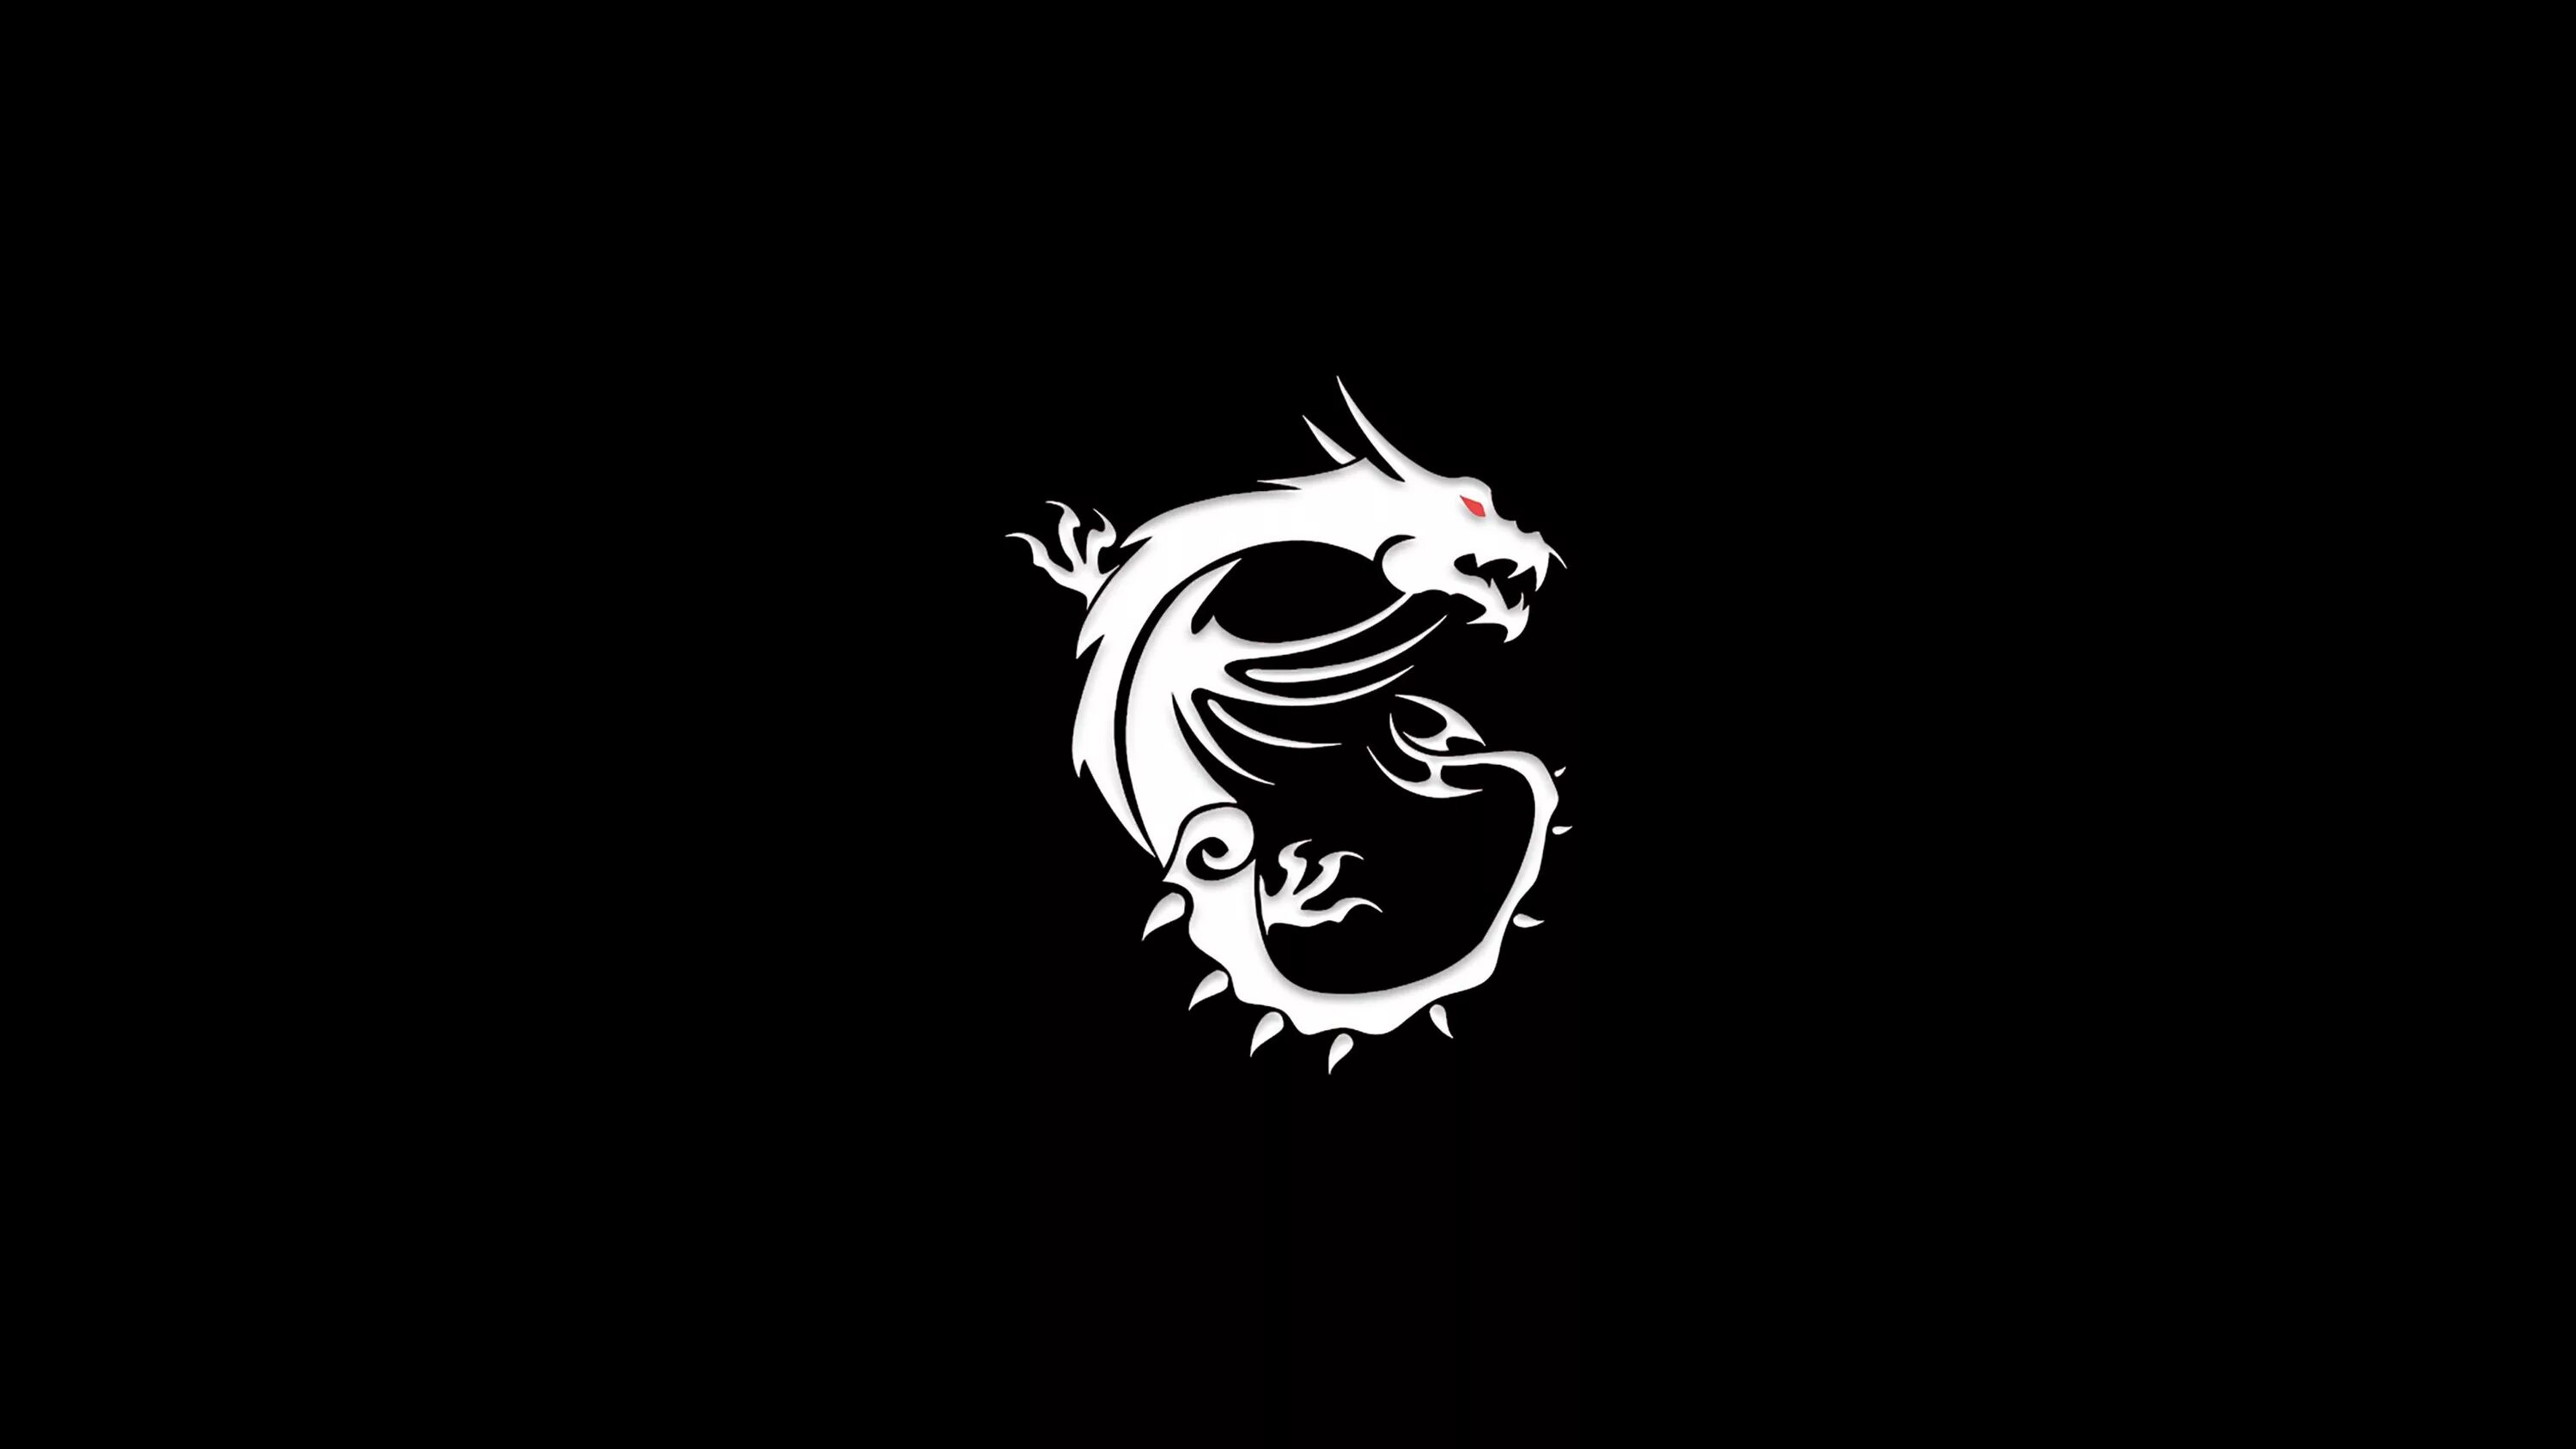 800 600 650. Логотип на черном фоне. Белый дракон на черном фоне. Дракон на черном фоне. Дракон Минимализм.